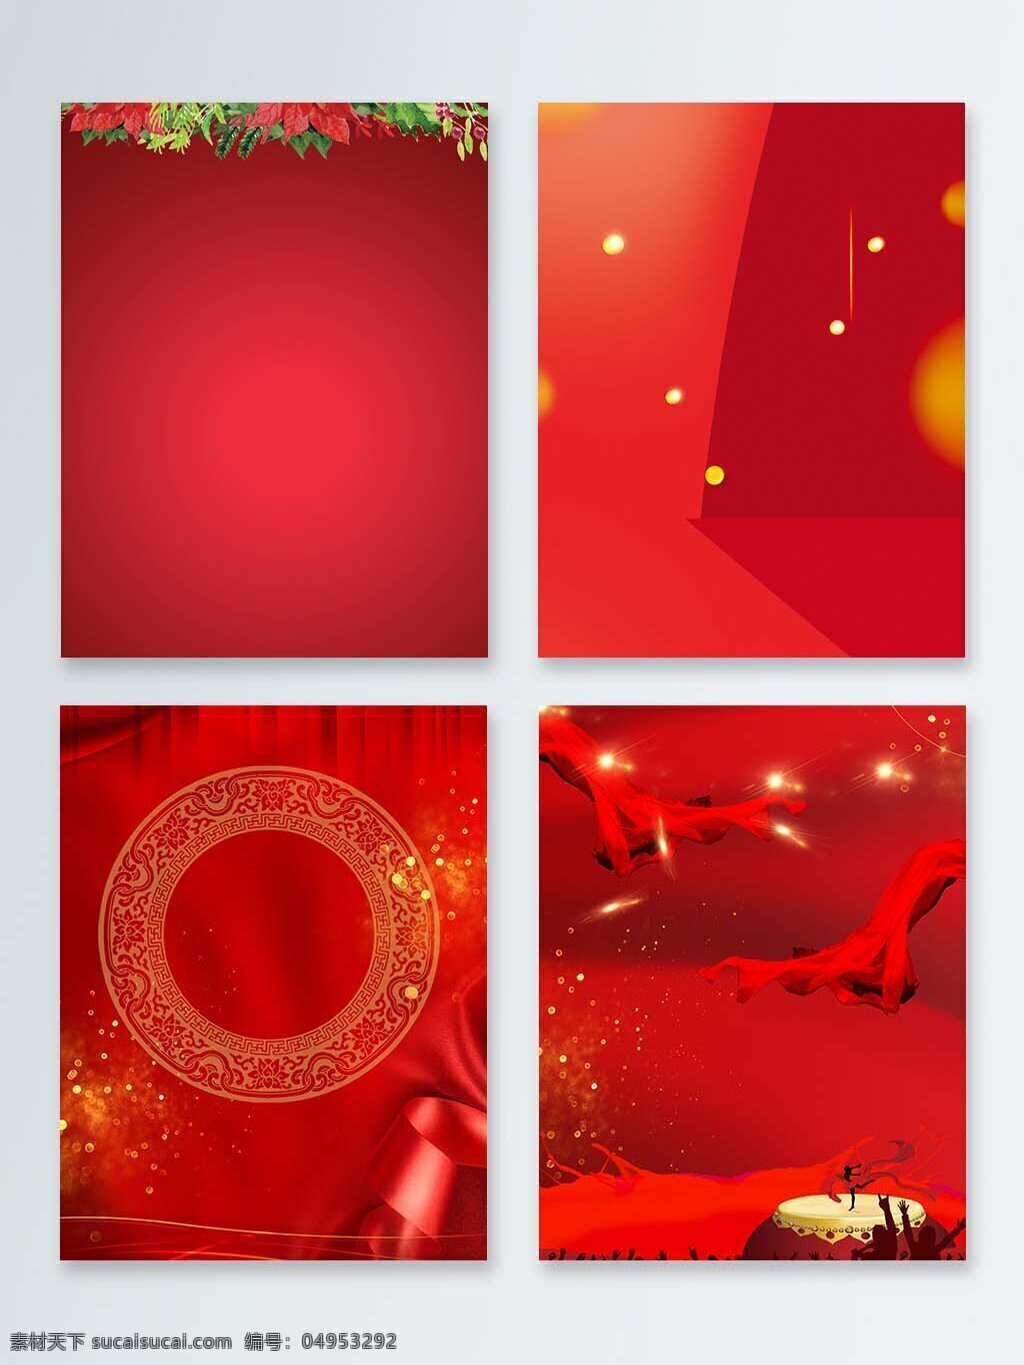 新春 喜庆 氛围 红色 背景 图 psd格式 背景图 春节 欢乐 新年 装饰